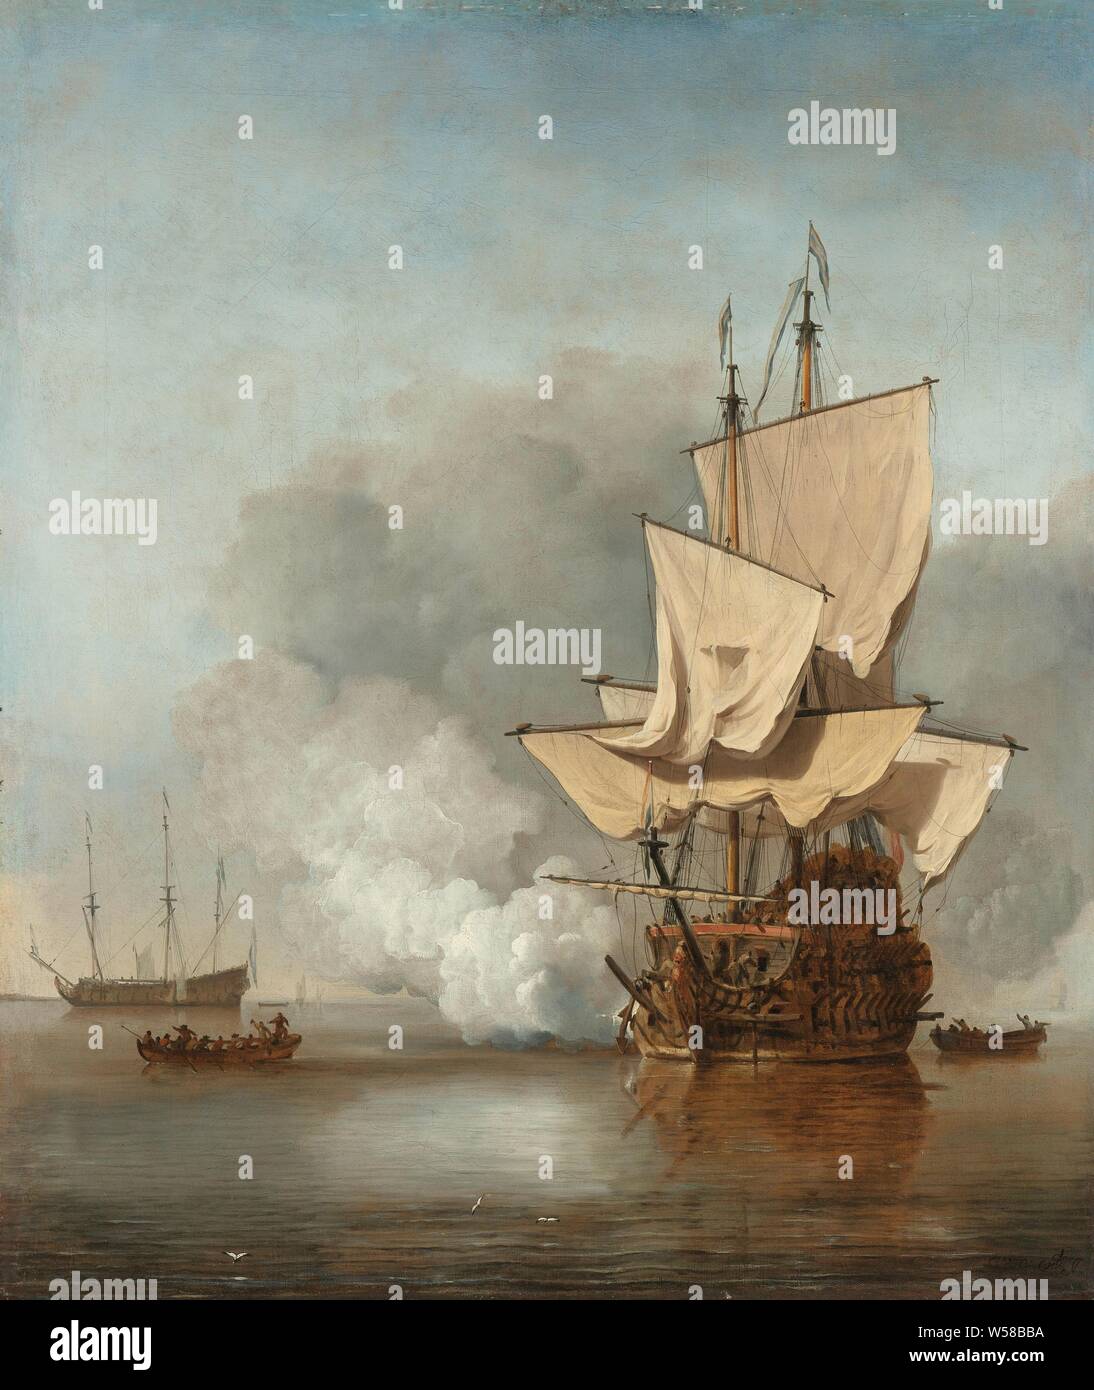 Le coup de canon, le coup de canon. Un navire de guerre dans un vent faible avec voiles de presse un coup de canon. Deux sloops de chaque côté, un autre navire de guerre dans la distance, avec voiles repassé. Coups de canon (salut militaire), Willem van de Velde (II), ch. 1680, la toile, la peinture à l'huile (peinture), h 78,5 cm × w 67 cm × H 90,8 cm × w 80,5 cm × 7,5 cm d Banque D'Images